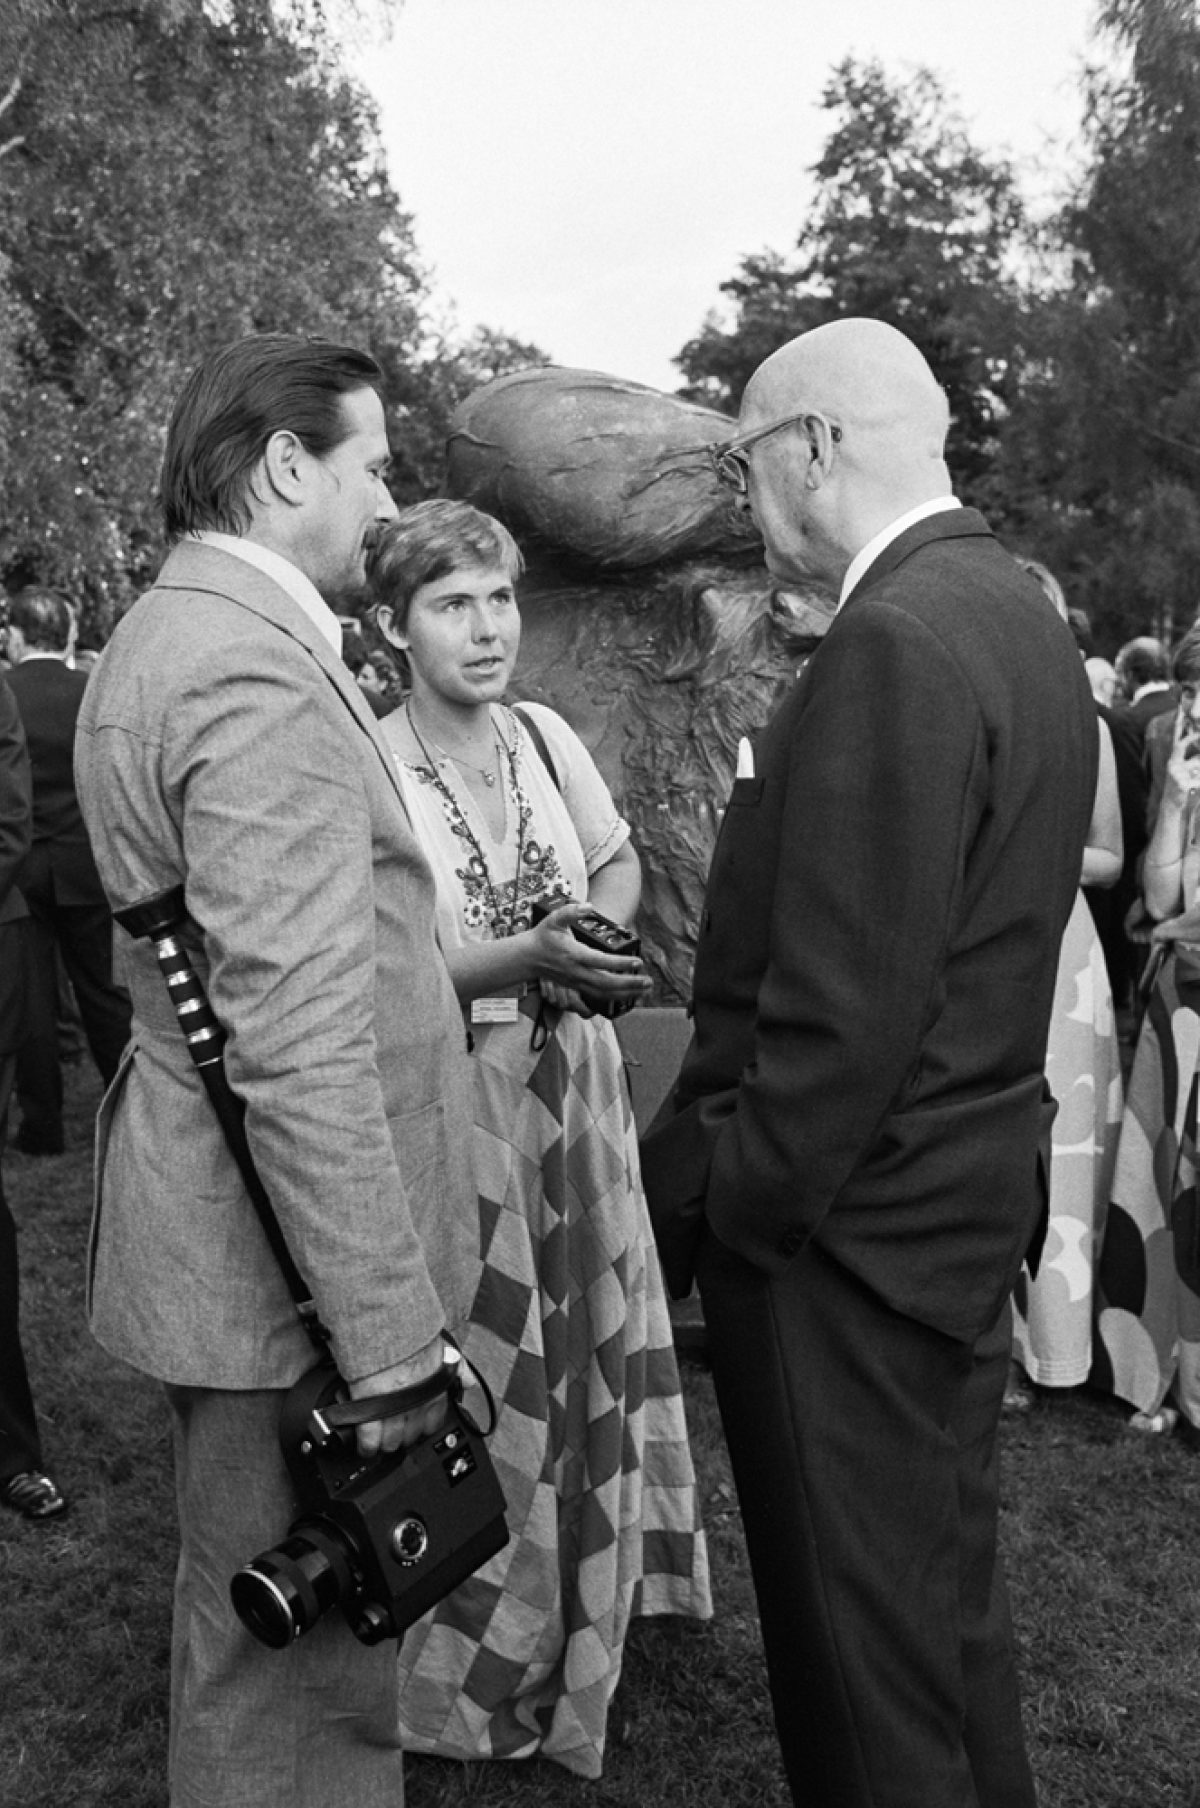 President Kekkonen (till höger) diskuterar med Mikko Niskanen och Maarit Tyrkkö på Fiskartorpet under ESSK 31.7.1975. Foto: PF-team / Pressfoto Zeeland / JOKA / Museiverket